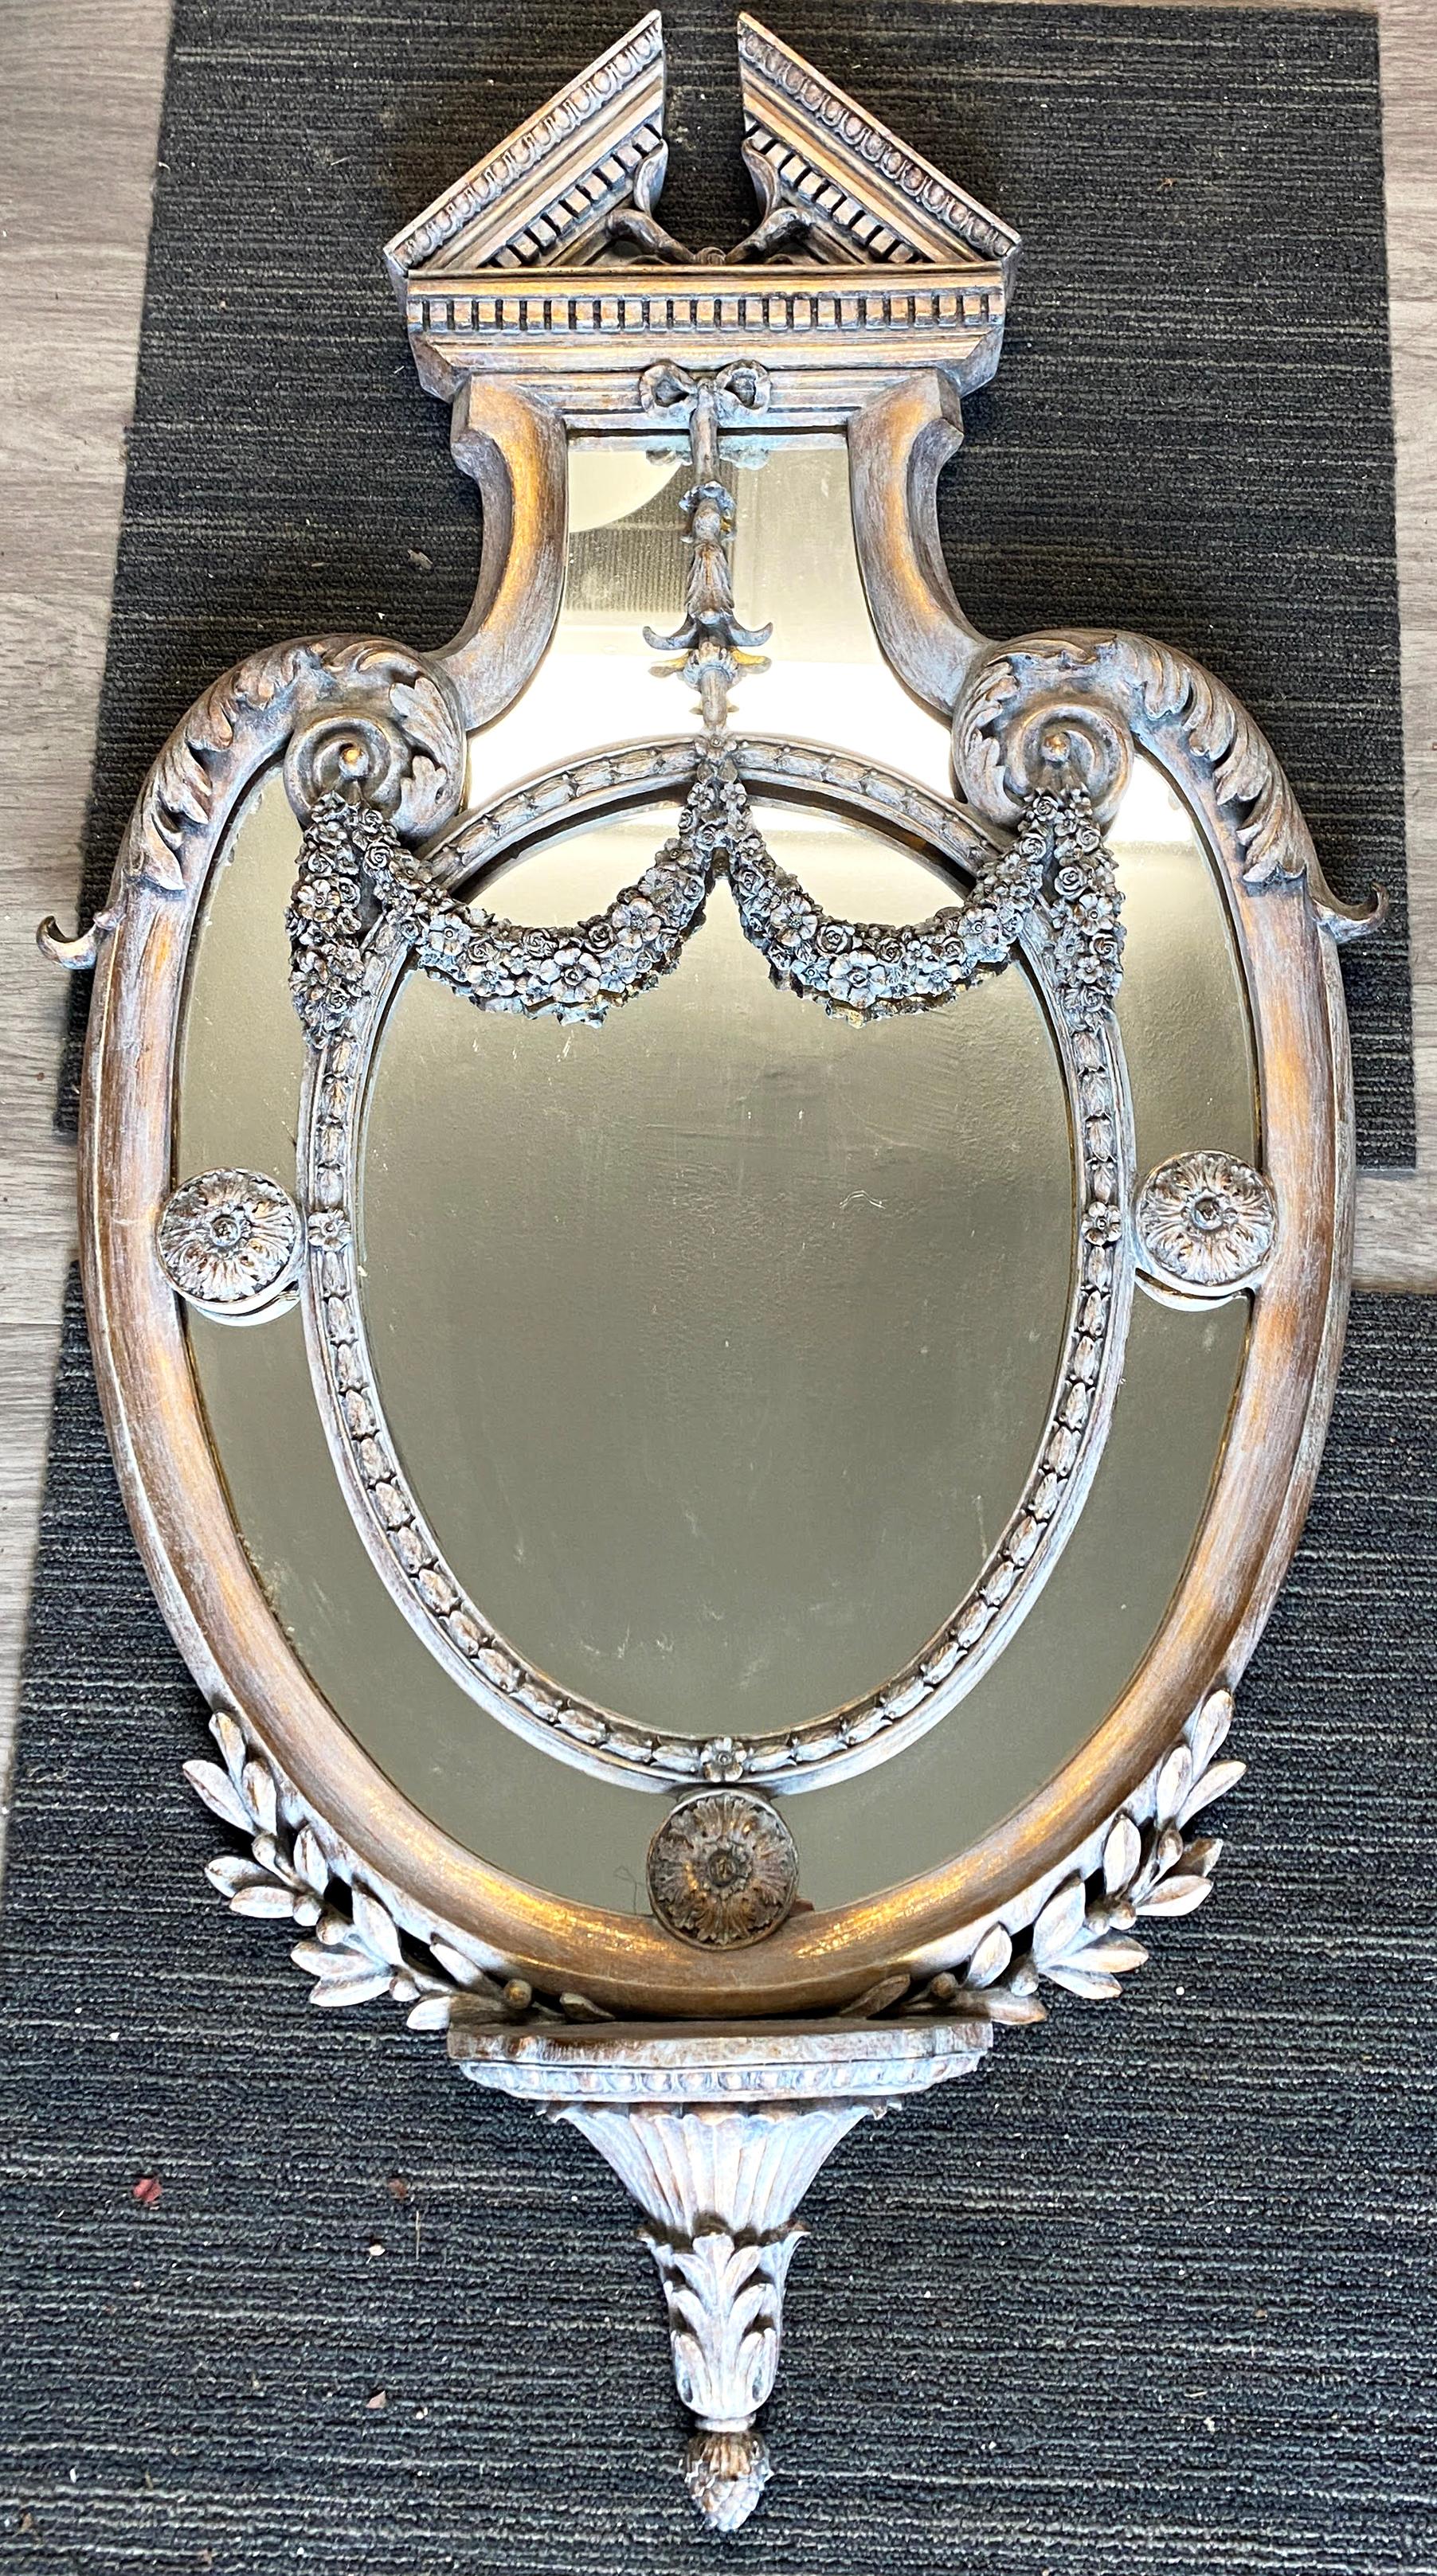 Miroir mural de style néoclassique, peint au lavis gris sur bois doré, A.C.C., avec un fronton fendu surmonté de guirlandes florales, un cadre en forme, entourant une plaque de miroir plate et sectionnée, se terminant par un épi de faîtage